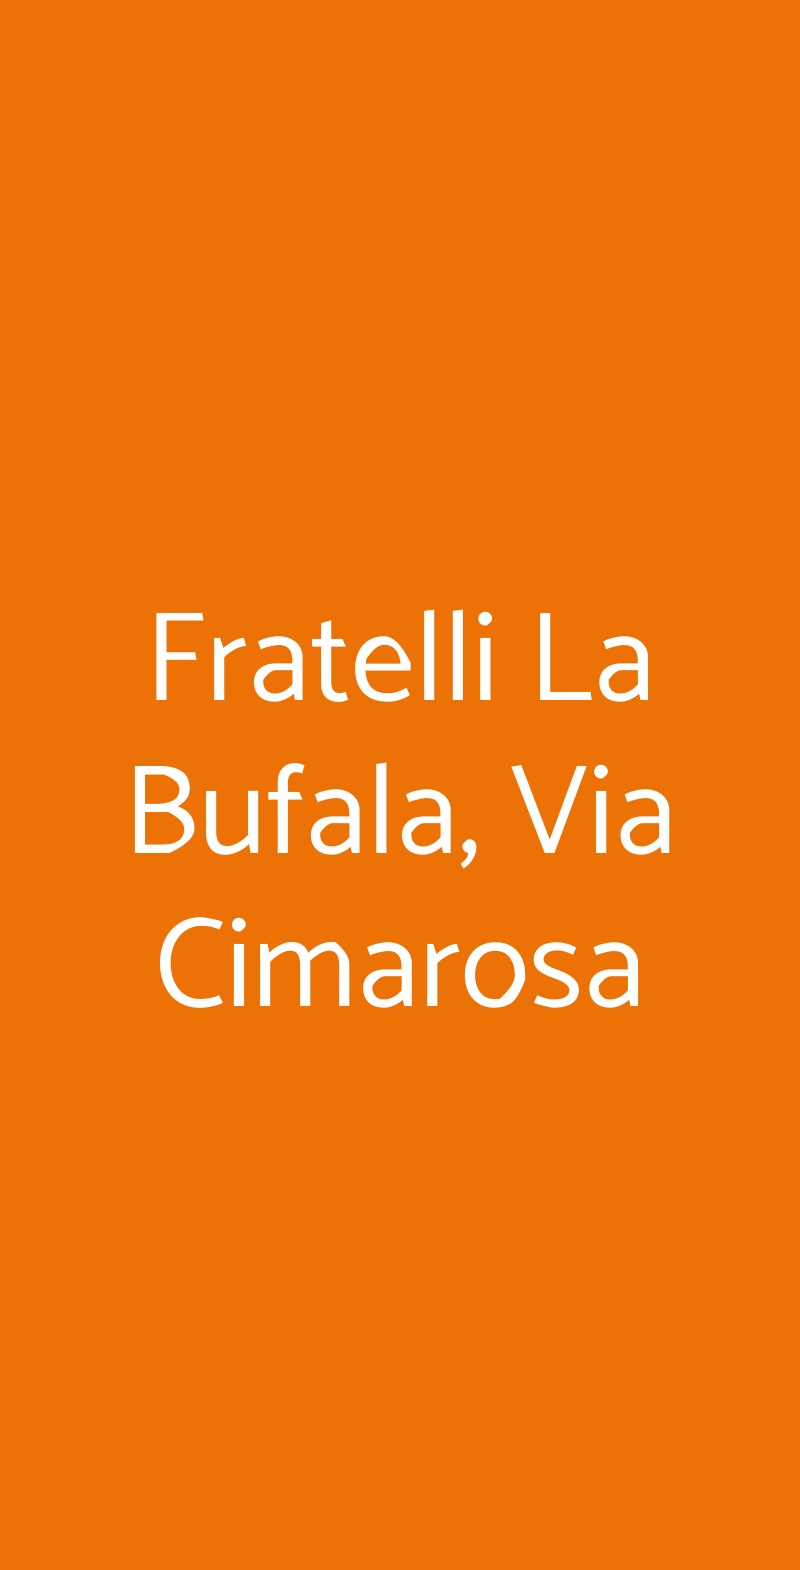 Fratelli La Bufala, Via Cimarosa Milano menù 1 pagina